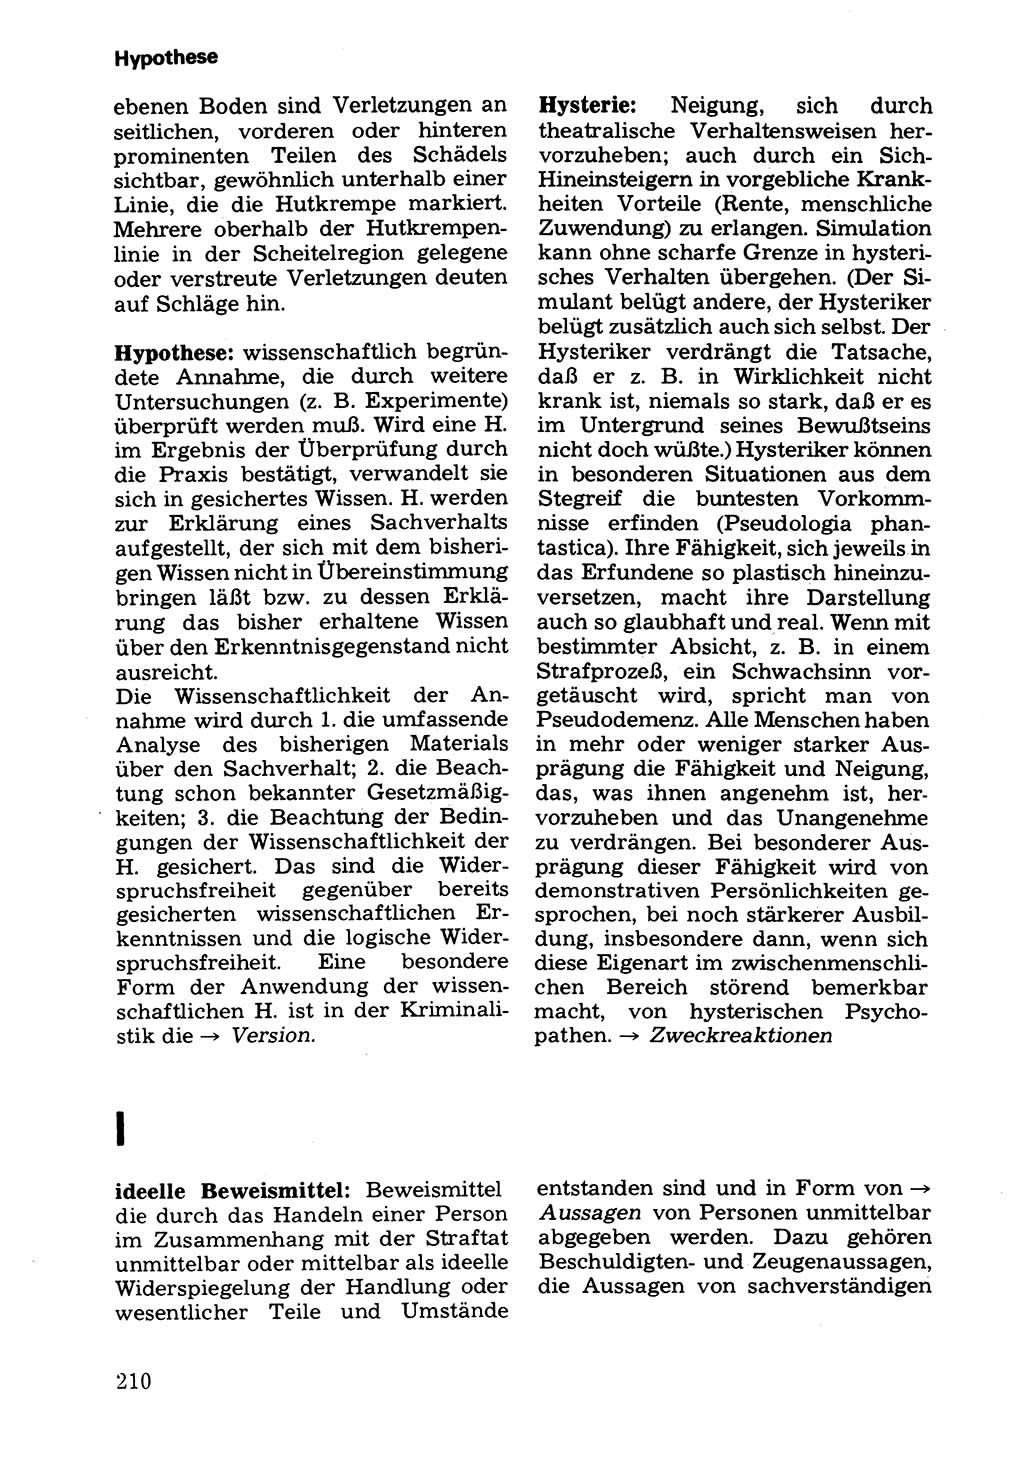 Wörterbuch der sozialistischen Kriminalistik [Deutsche Demokratische Republik (DDR)] 1981, Seite 210 (Wb. soz. Krim. DDR 1981, S. 210)